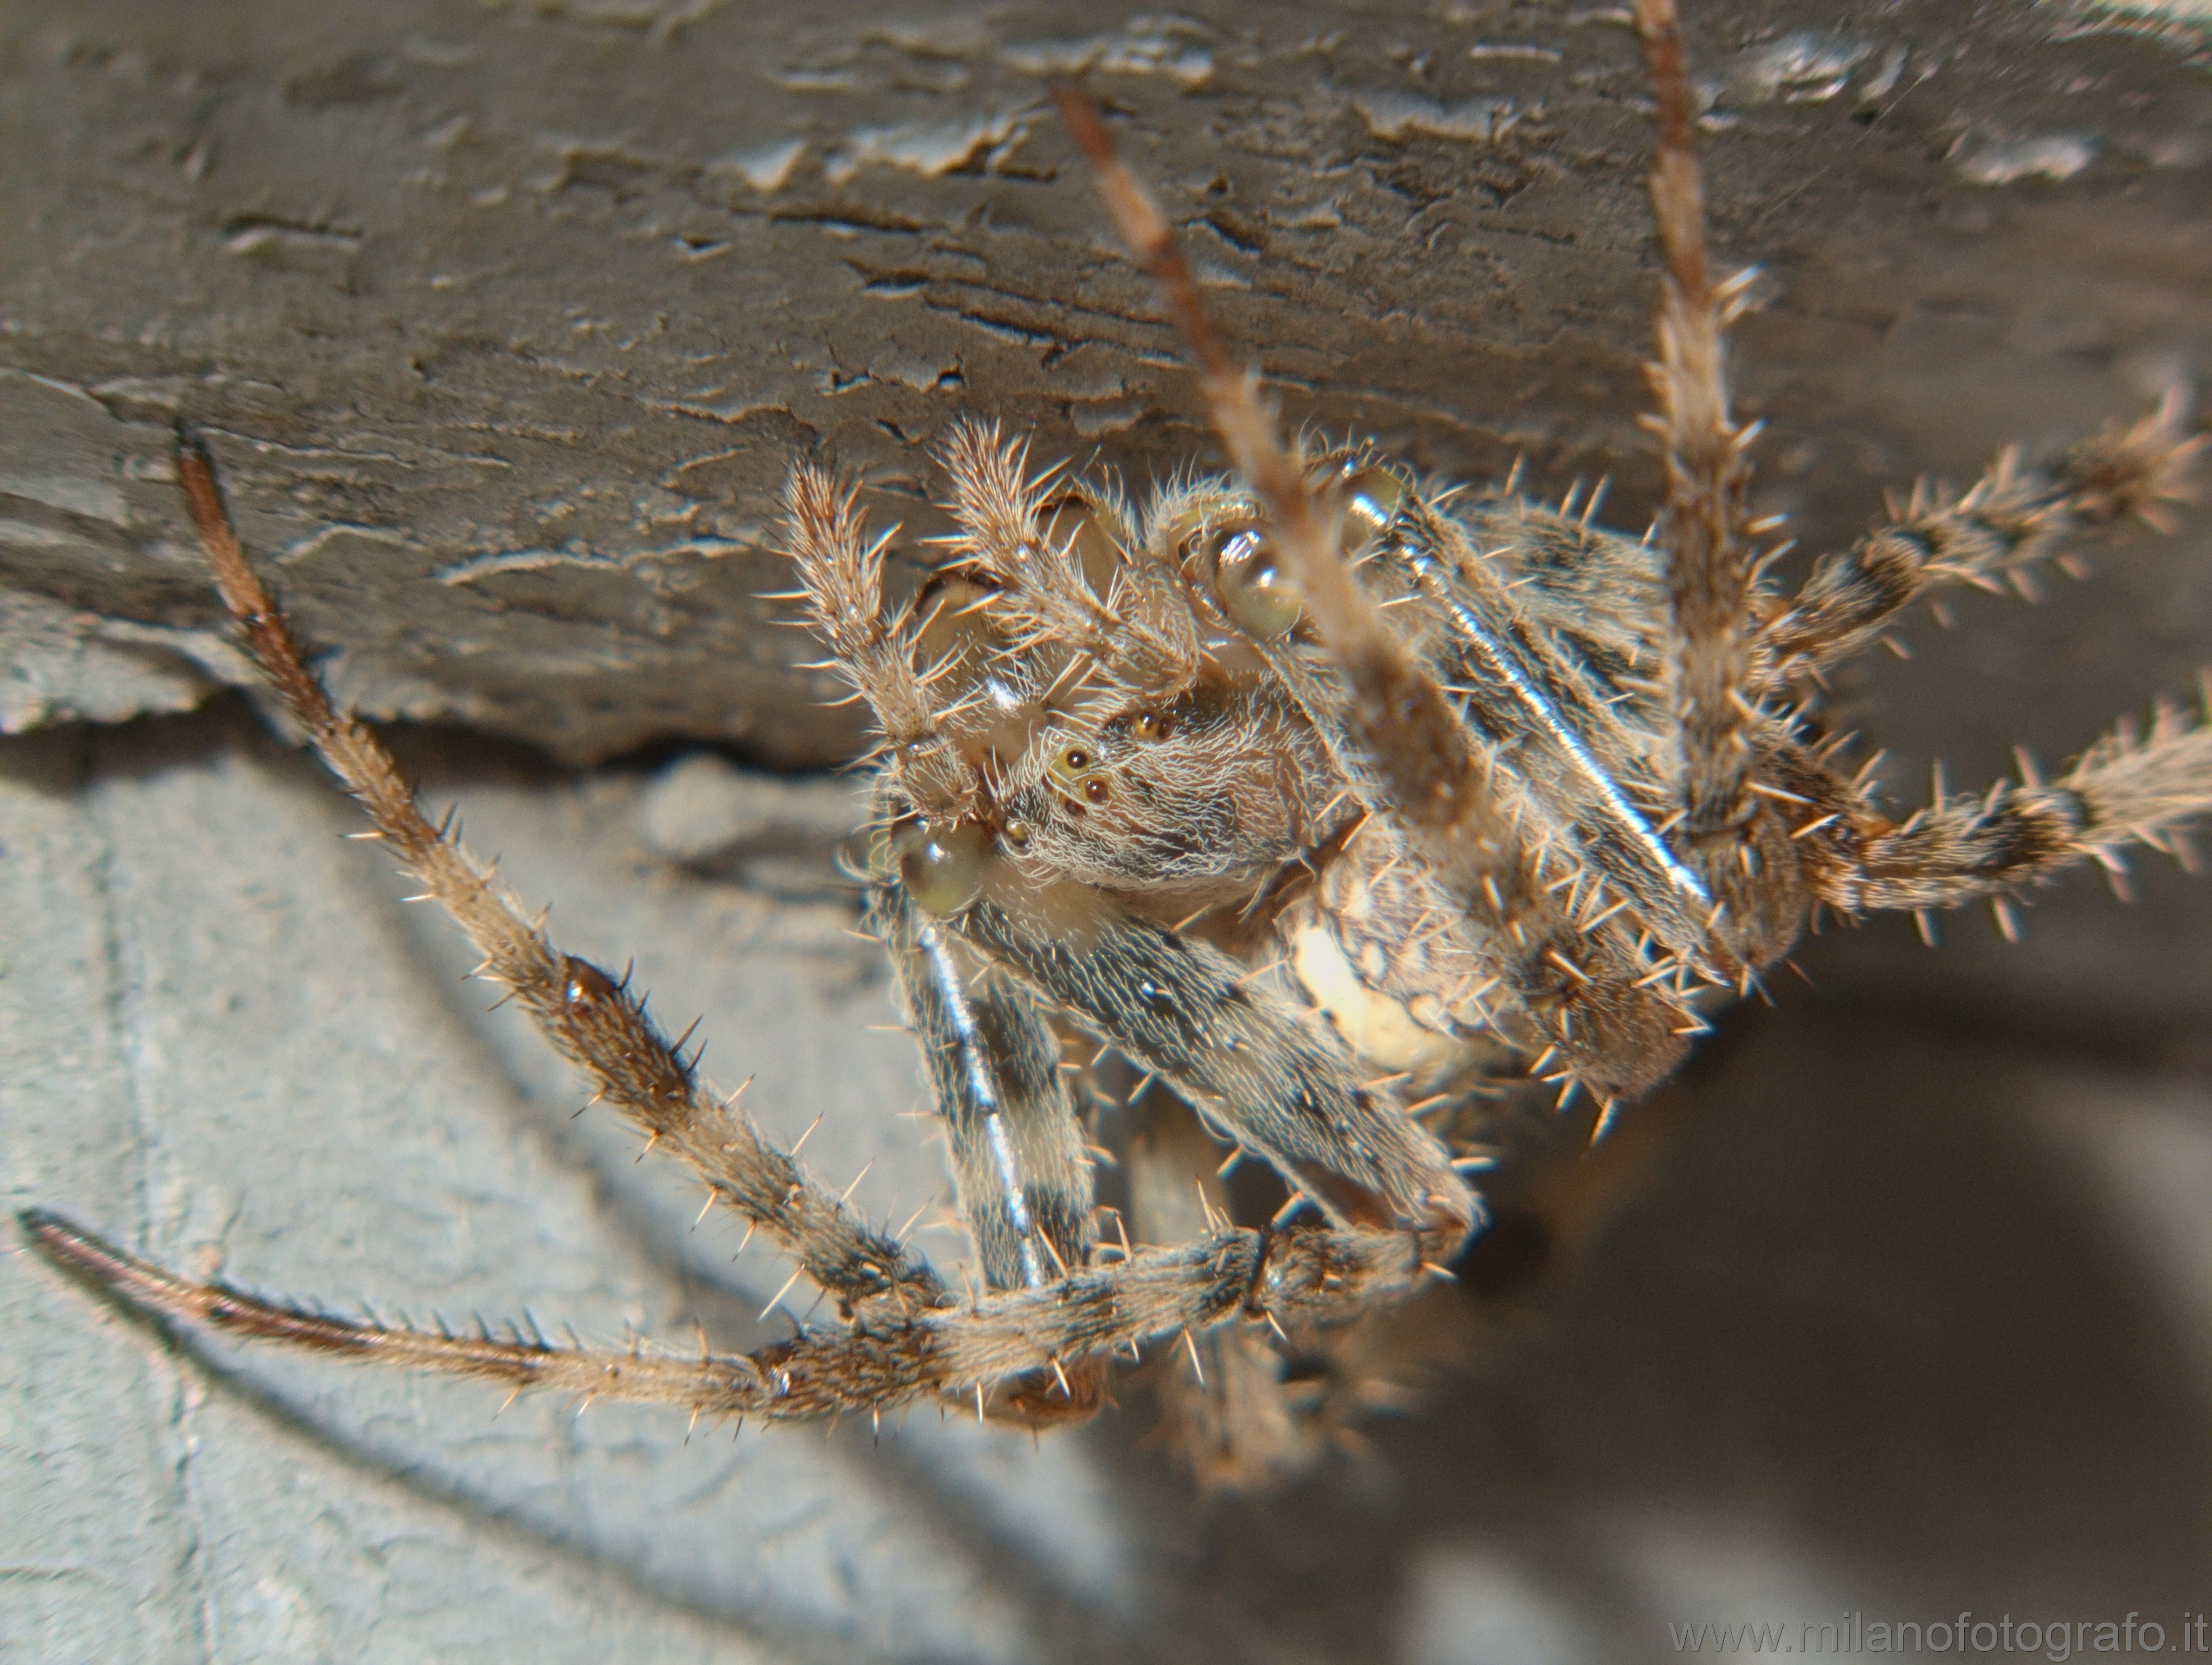 Campiglia Cervo (Biella, Italy): Araneus diadematus (Garden spider) - Campiglia Cervo (Biella, Italy)